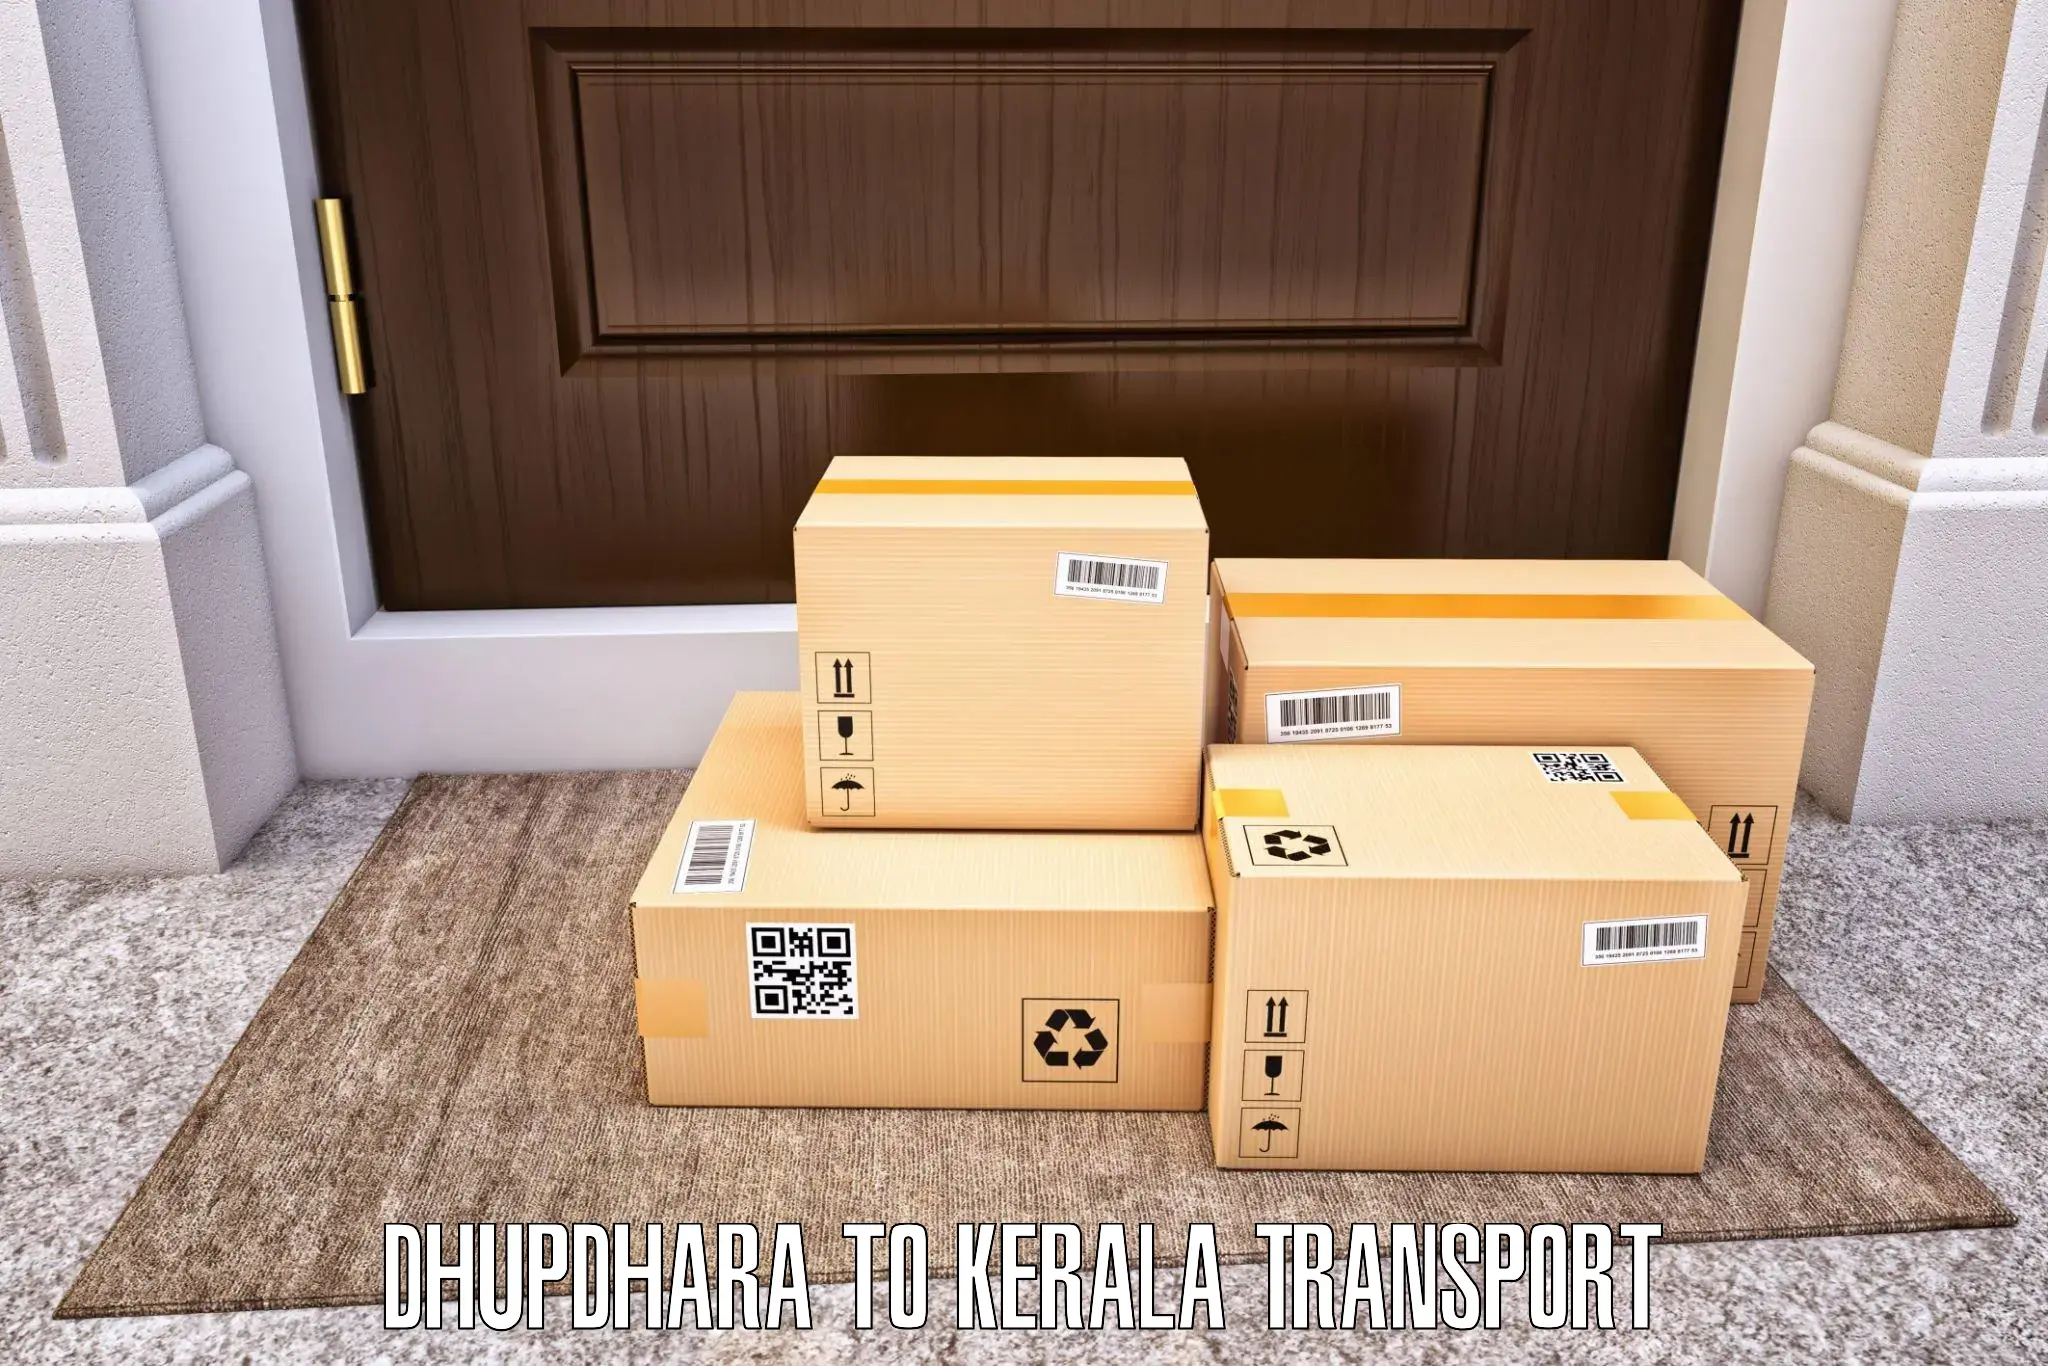 Transport in sharing Dhupdhara to Kuthuparamba